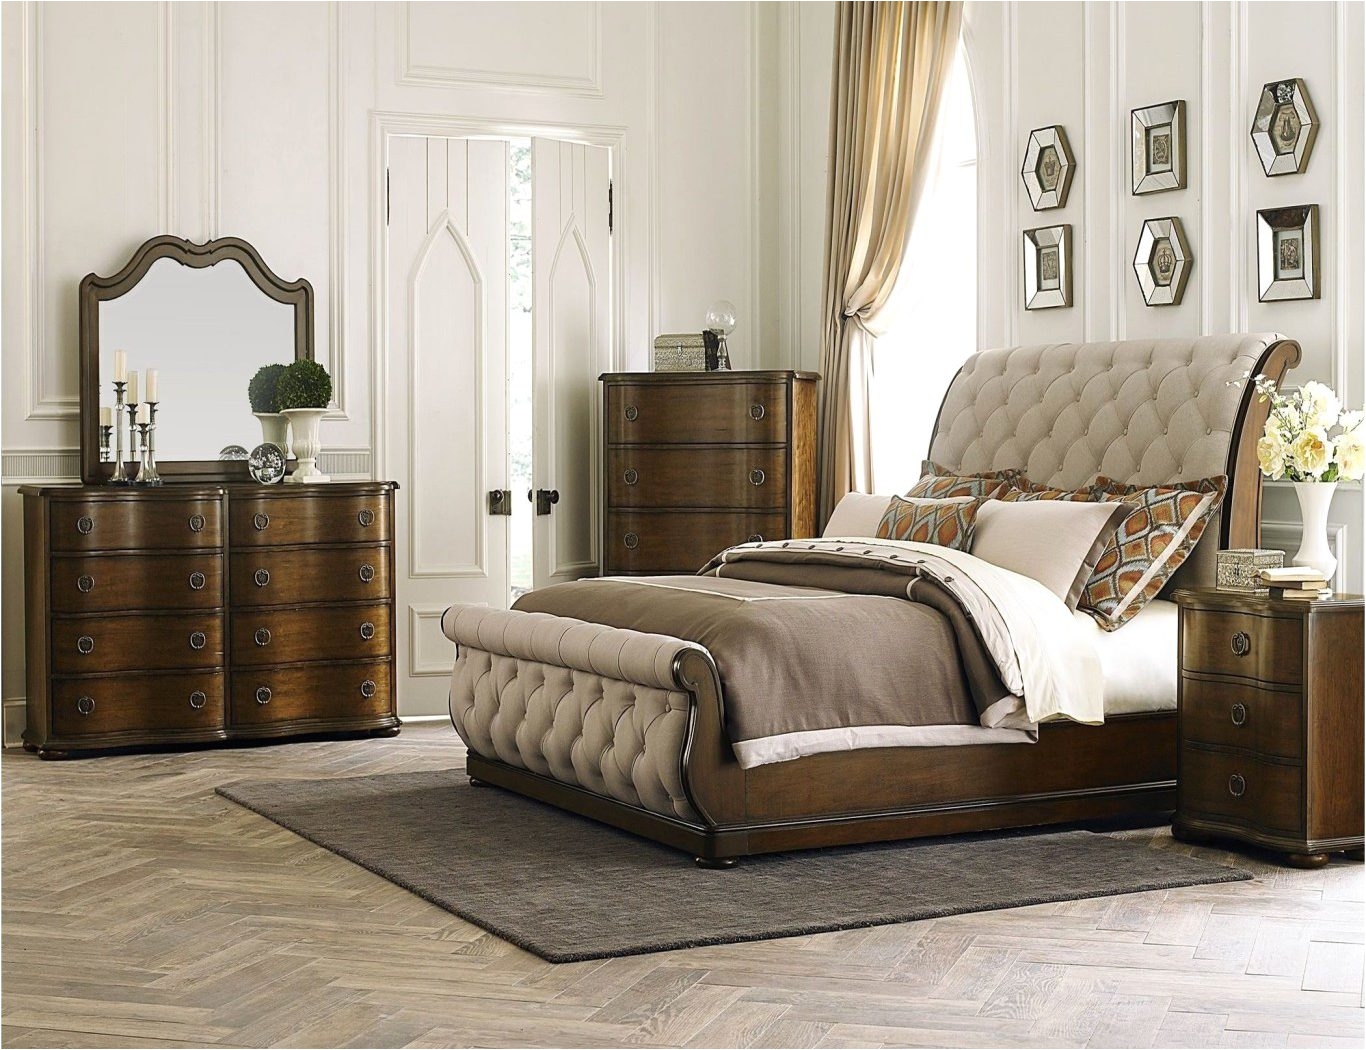 design sensational sofia vergara cambrian court chocolate dresser bedroom sets home ideas ikea duckdns 1400